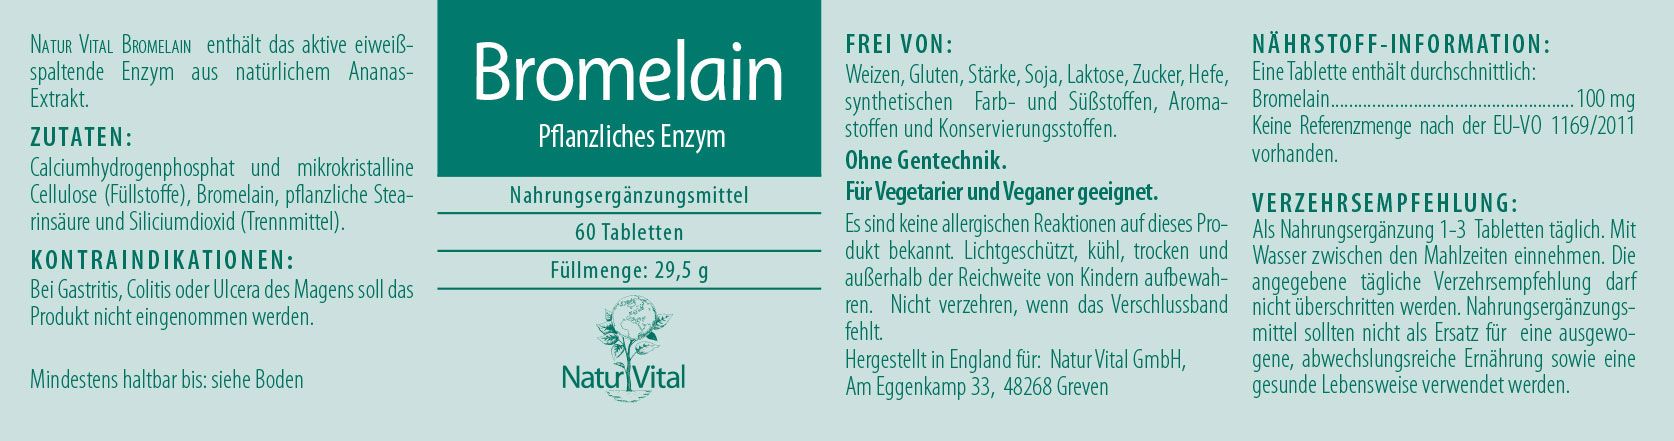 Etikett Bromelain pflanzliches Enzym von Natur Vital beinhaltet 60 Tabletten